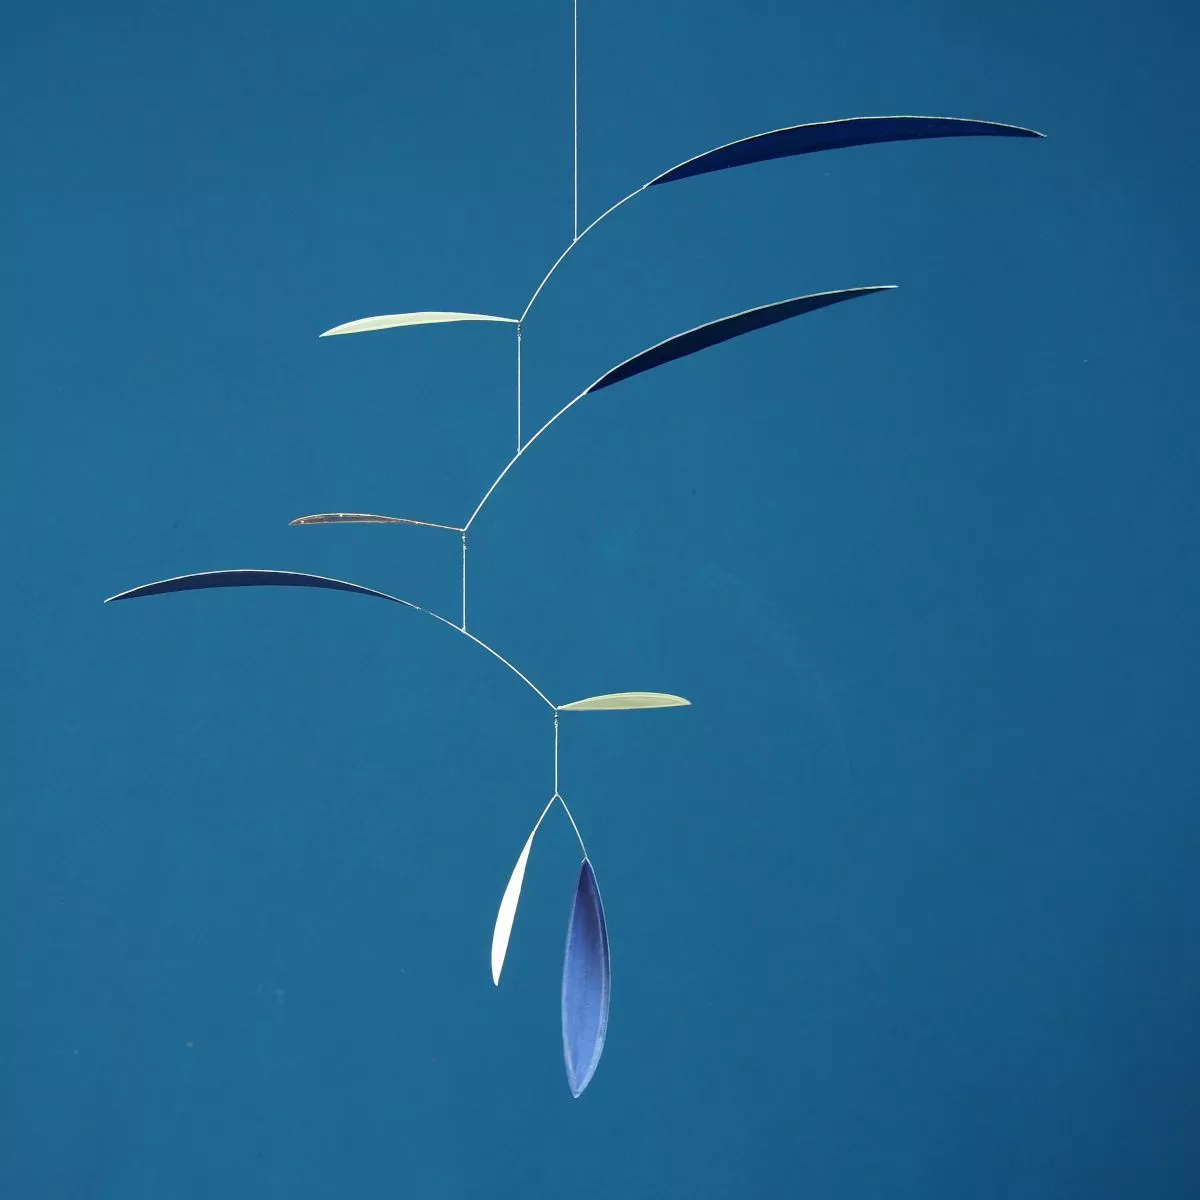 Handbemaltes Design-Mobile "Swipp" – Blau / Weiß mit Kupfer (60 x 60 cm)